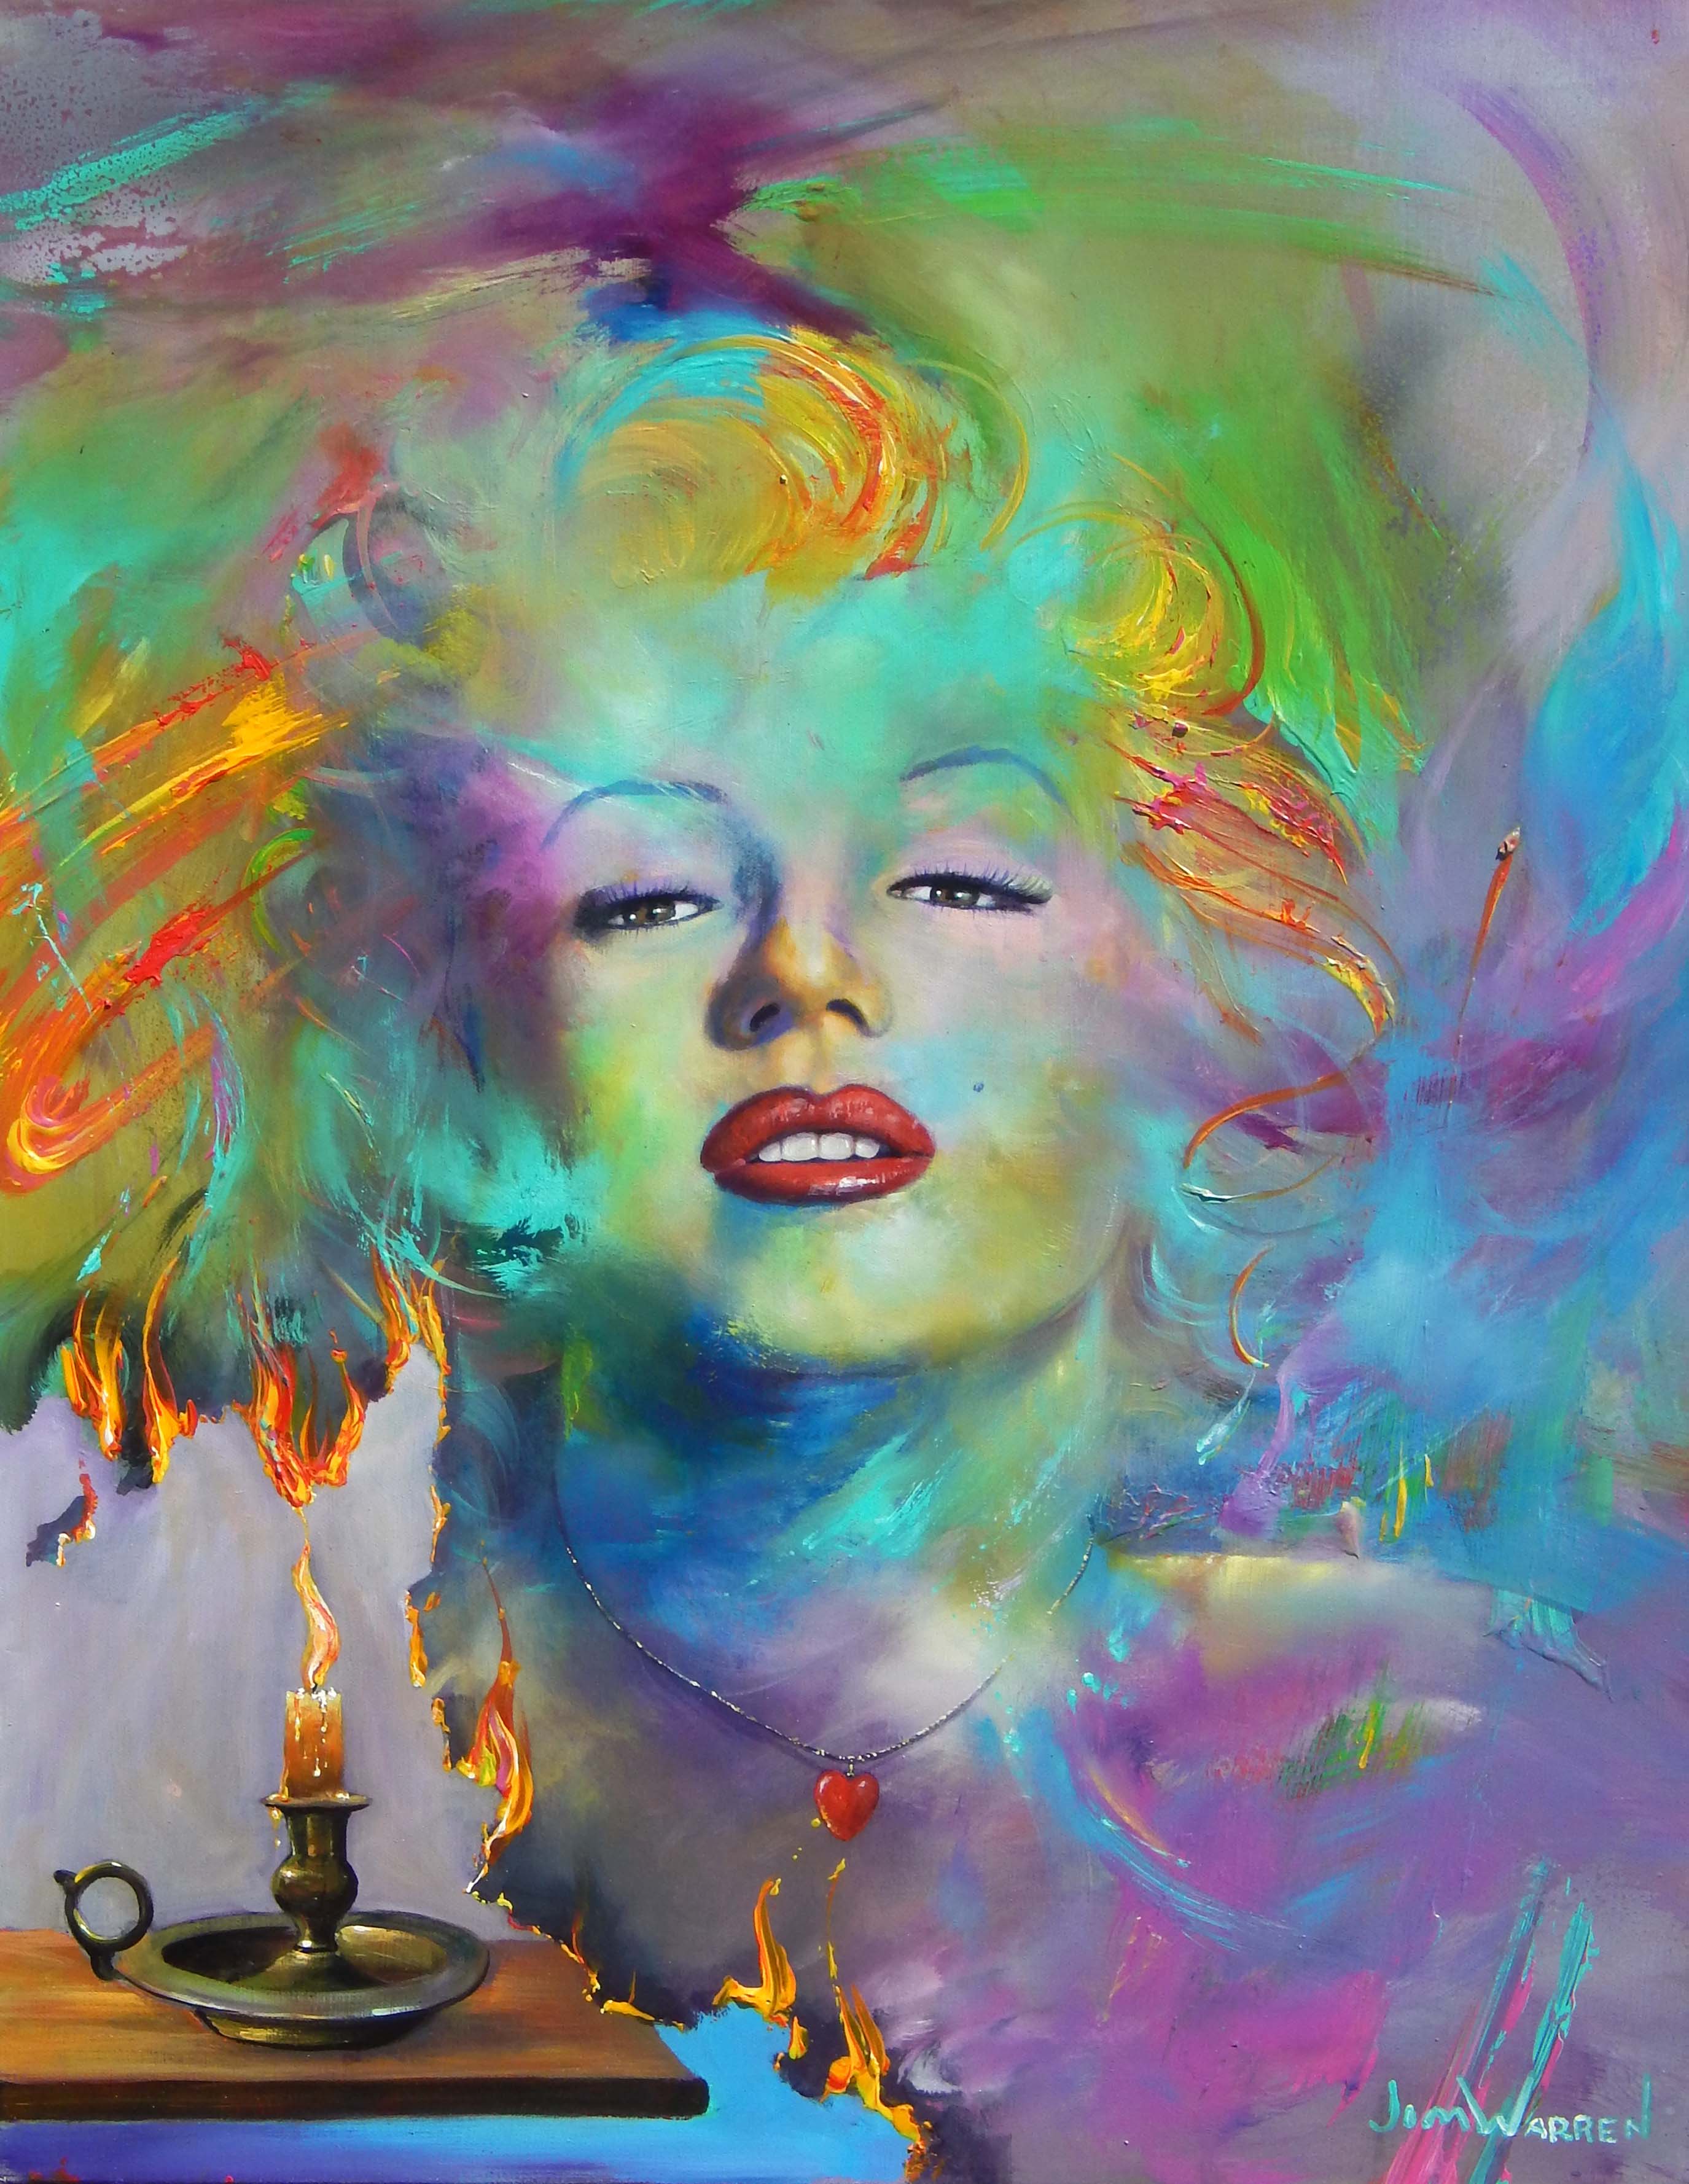 Jim Warren Marilyn Monroe - A Painted lady